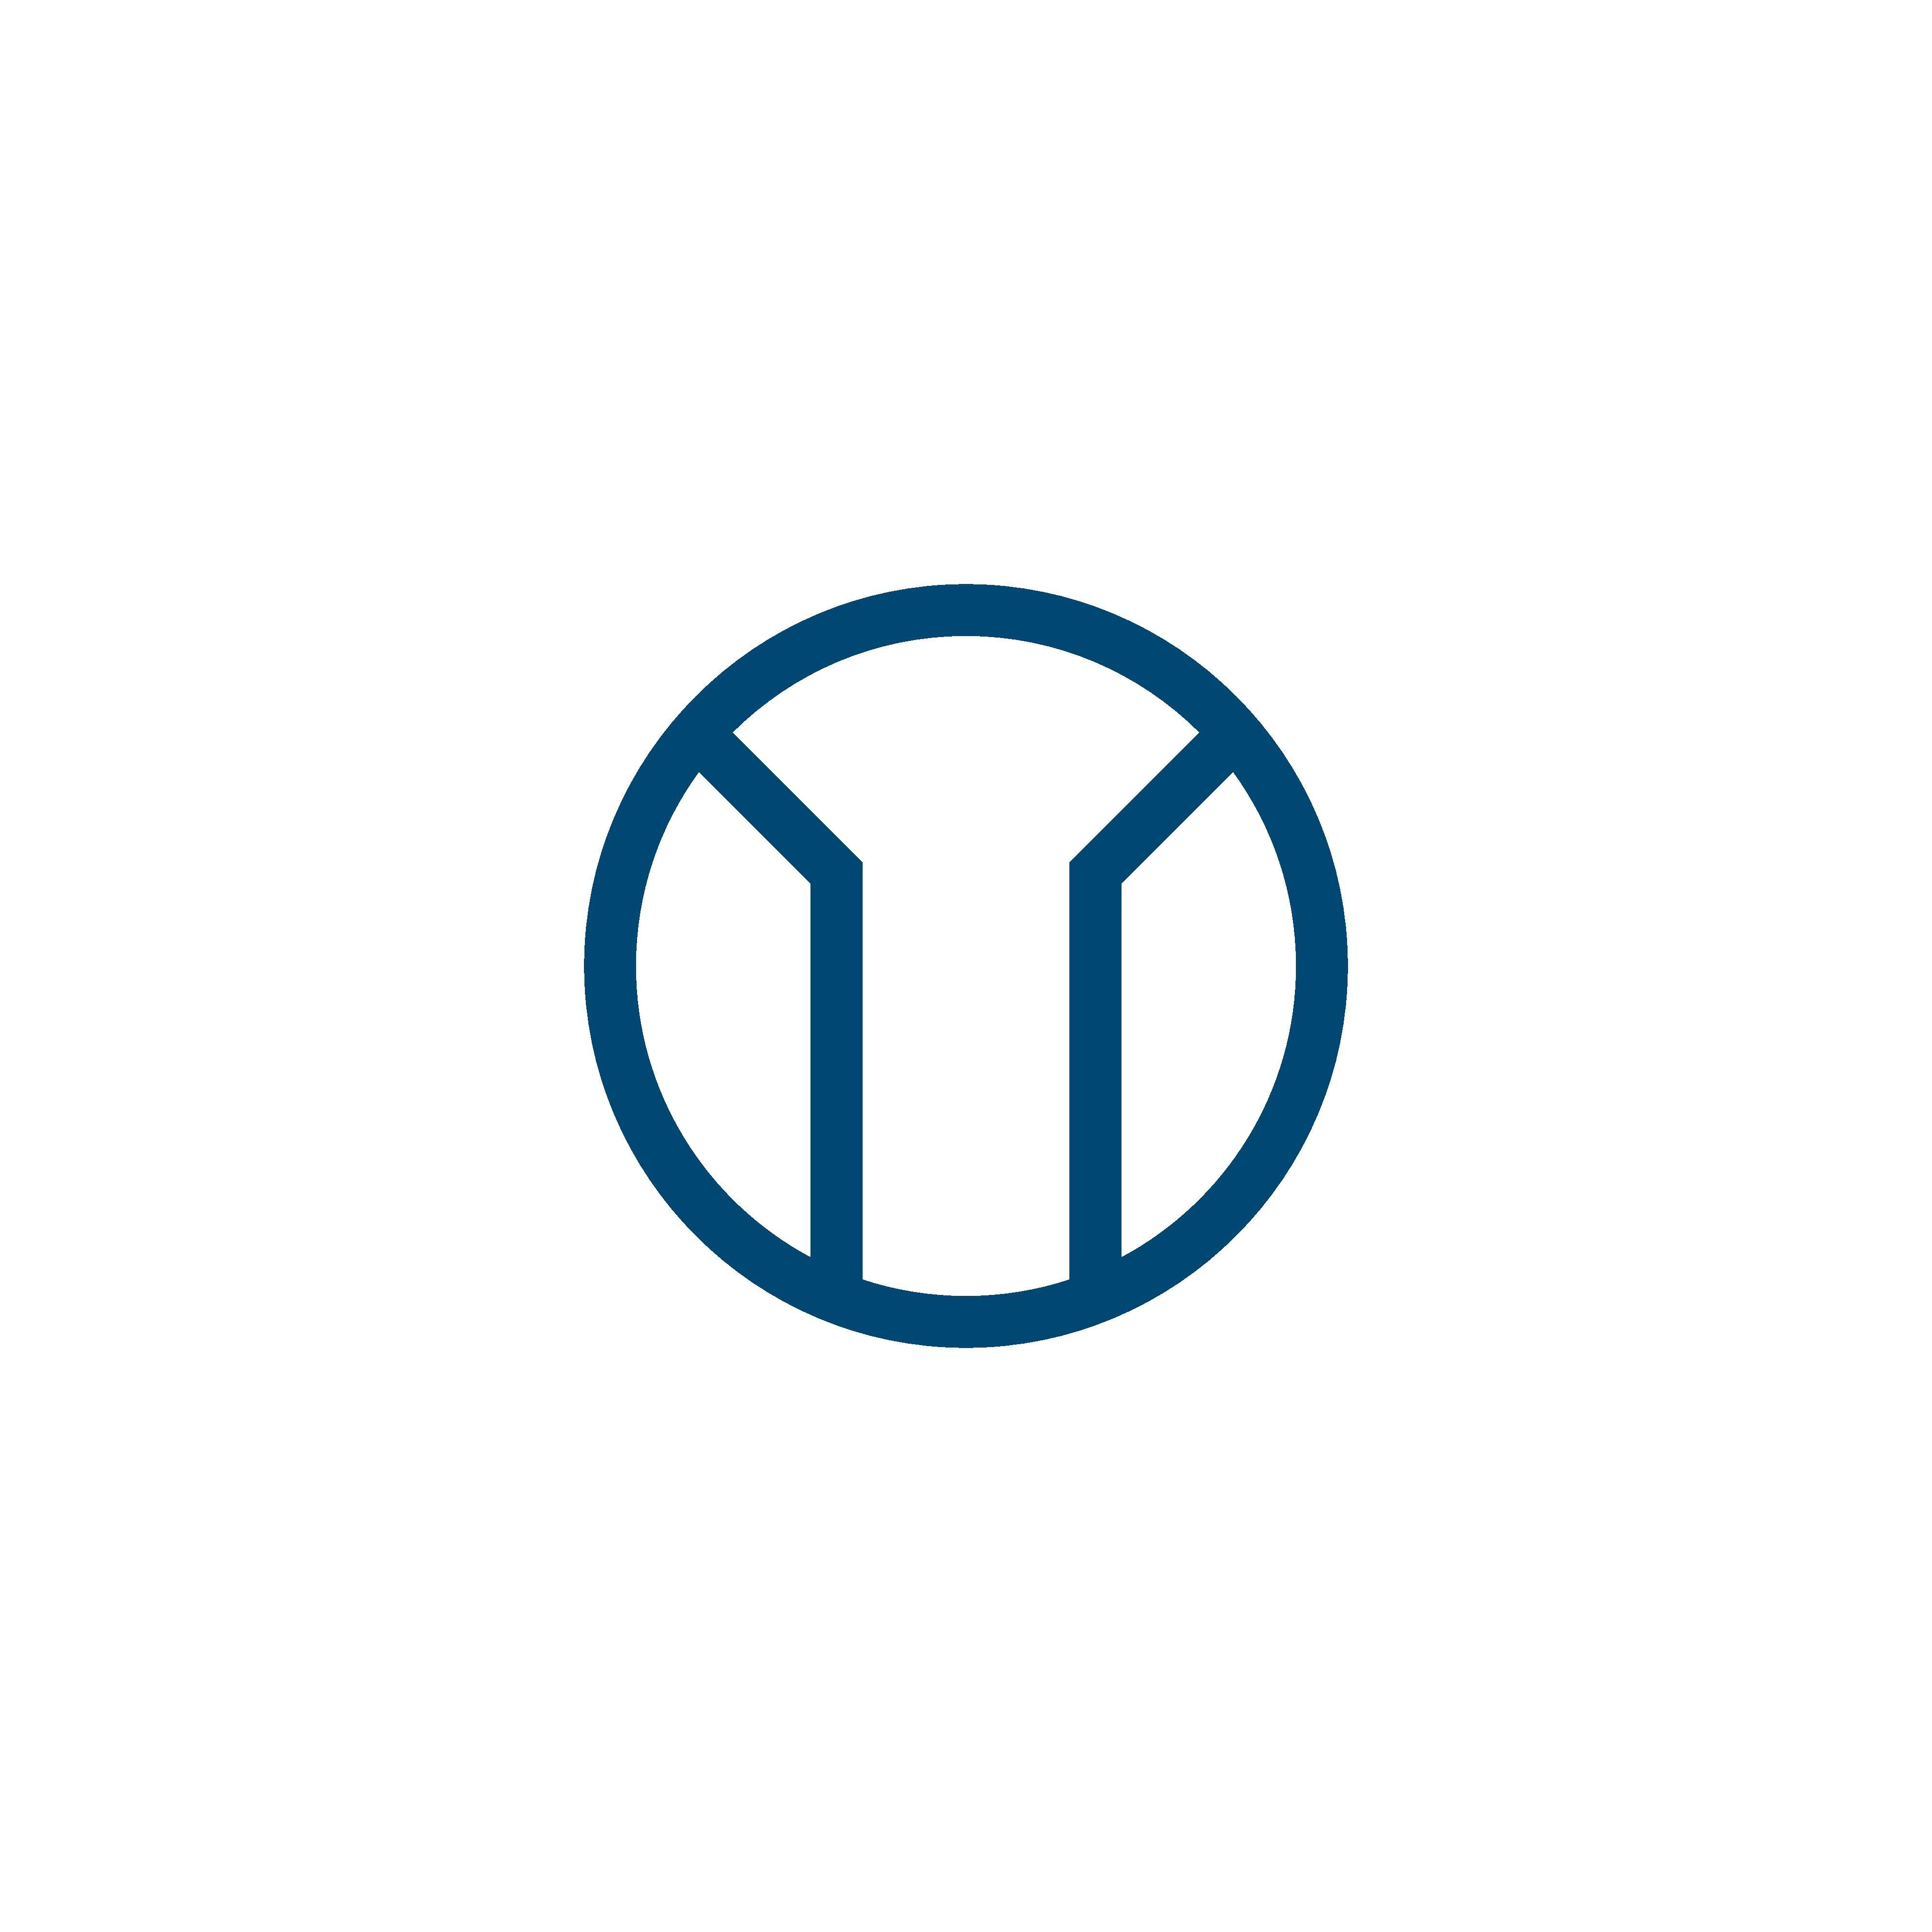 M Circle Logo - M letter logo vector. TM letter logo vector. Circle logo. LOGO